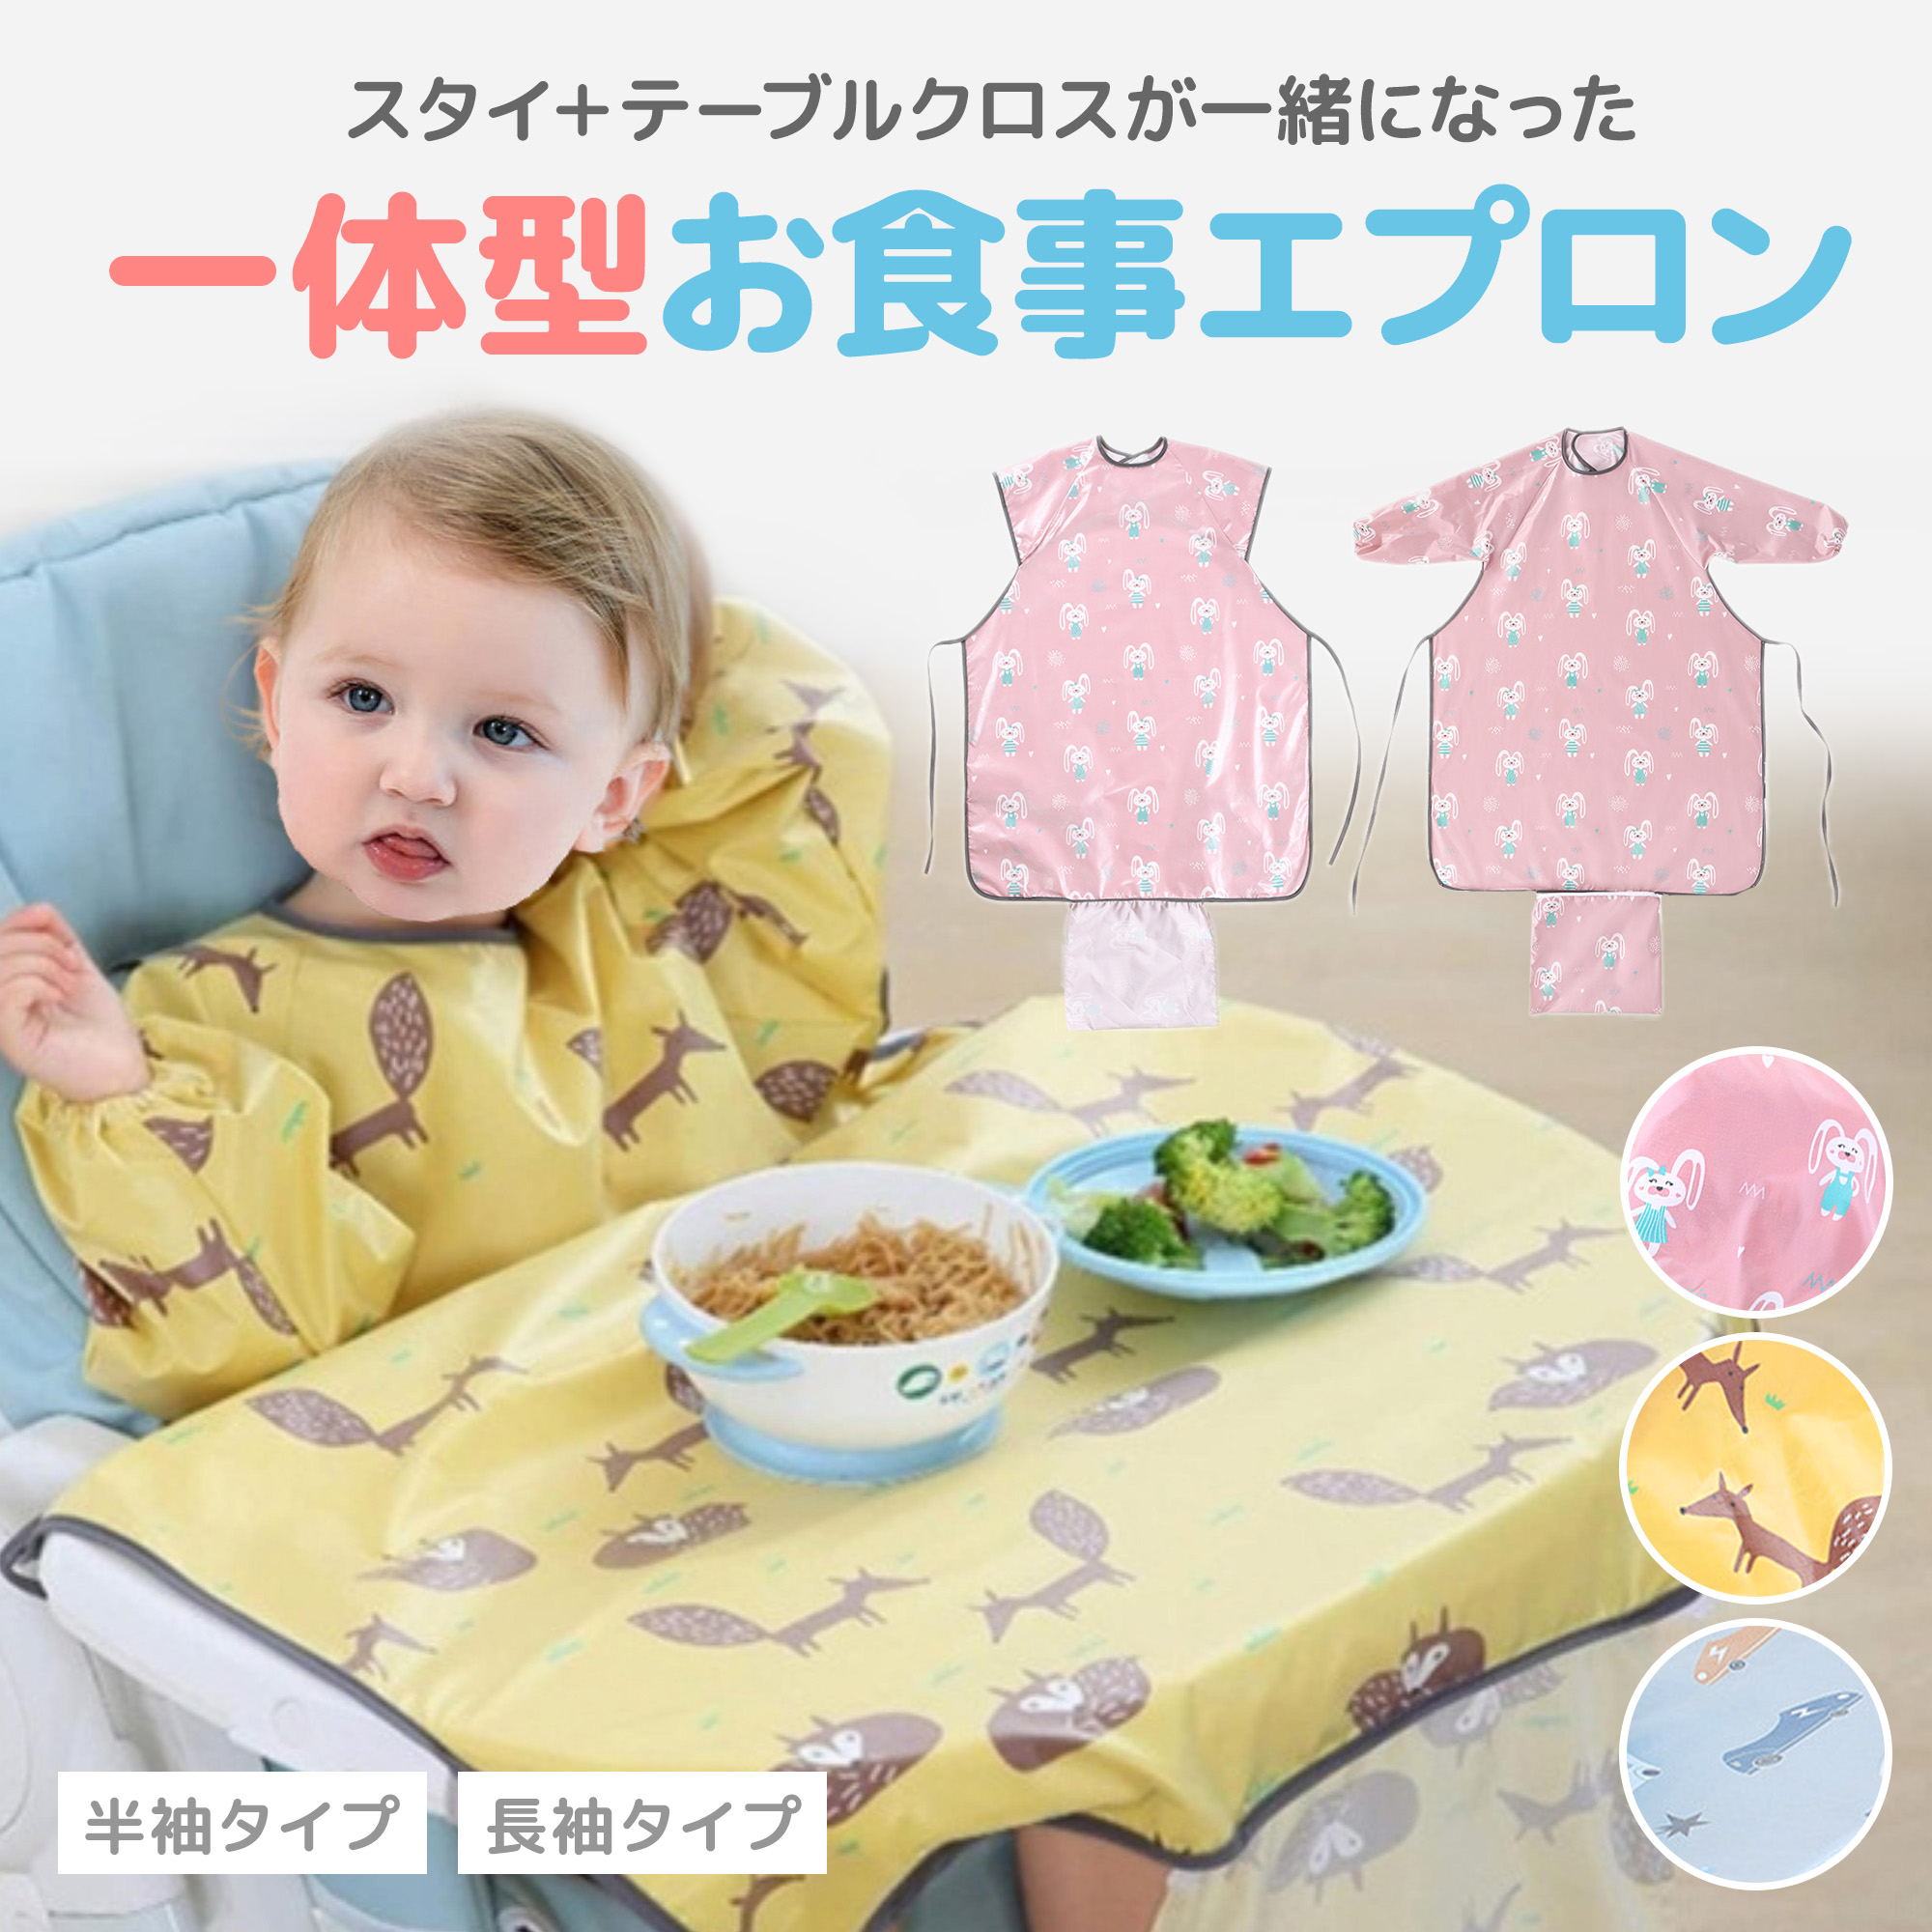 半額SALE☆ テマロン 離乳食 エプロン 赤ちゃん お食事エプロン 食べこぼし